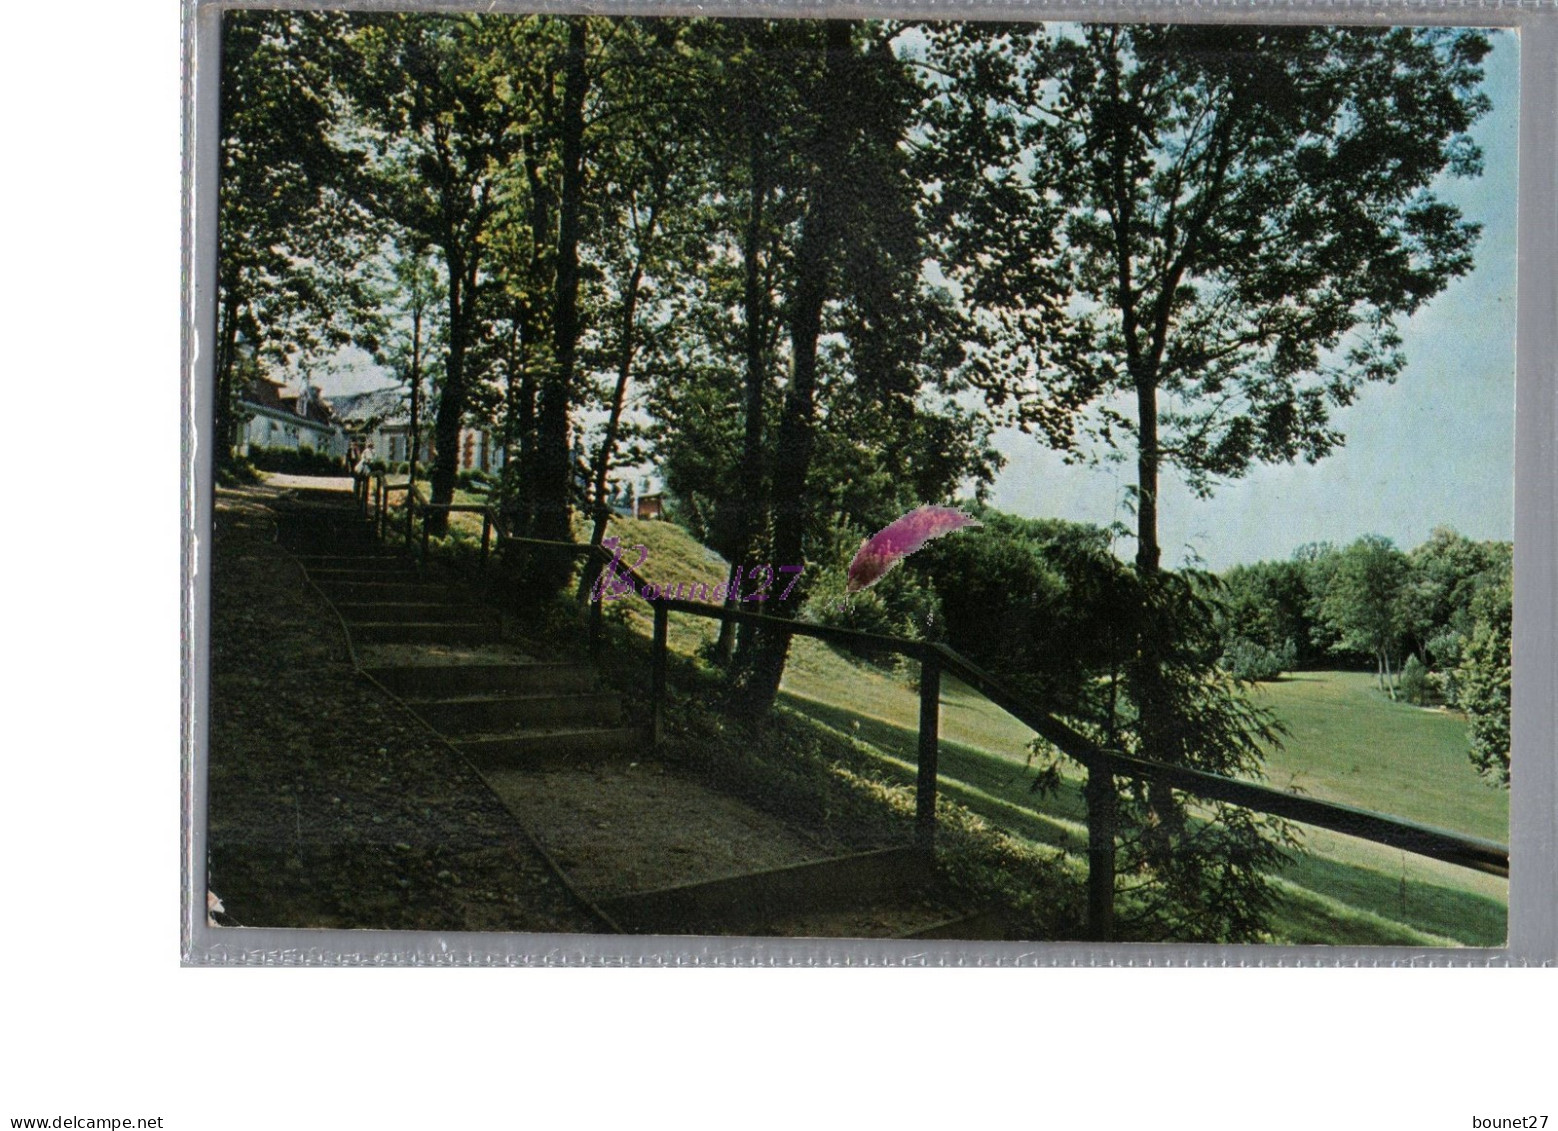 CREPY EN VALOIS 60 - Vue Sur Le Parc Verdure Arbre 1987 - Crepy En Valois